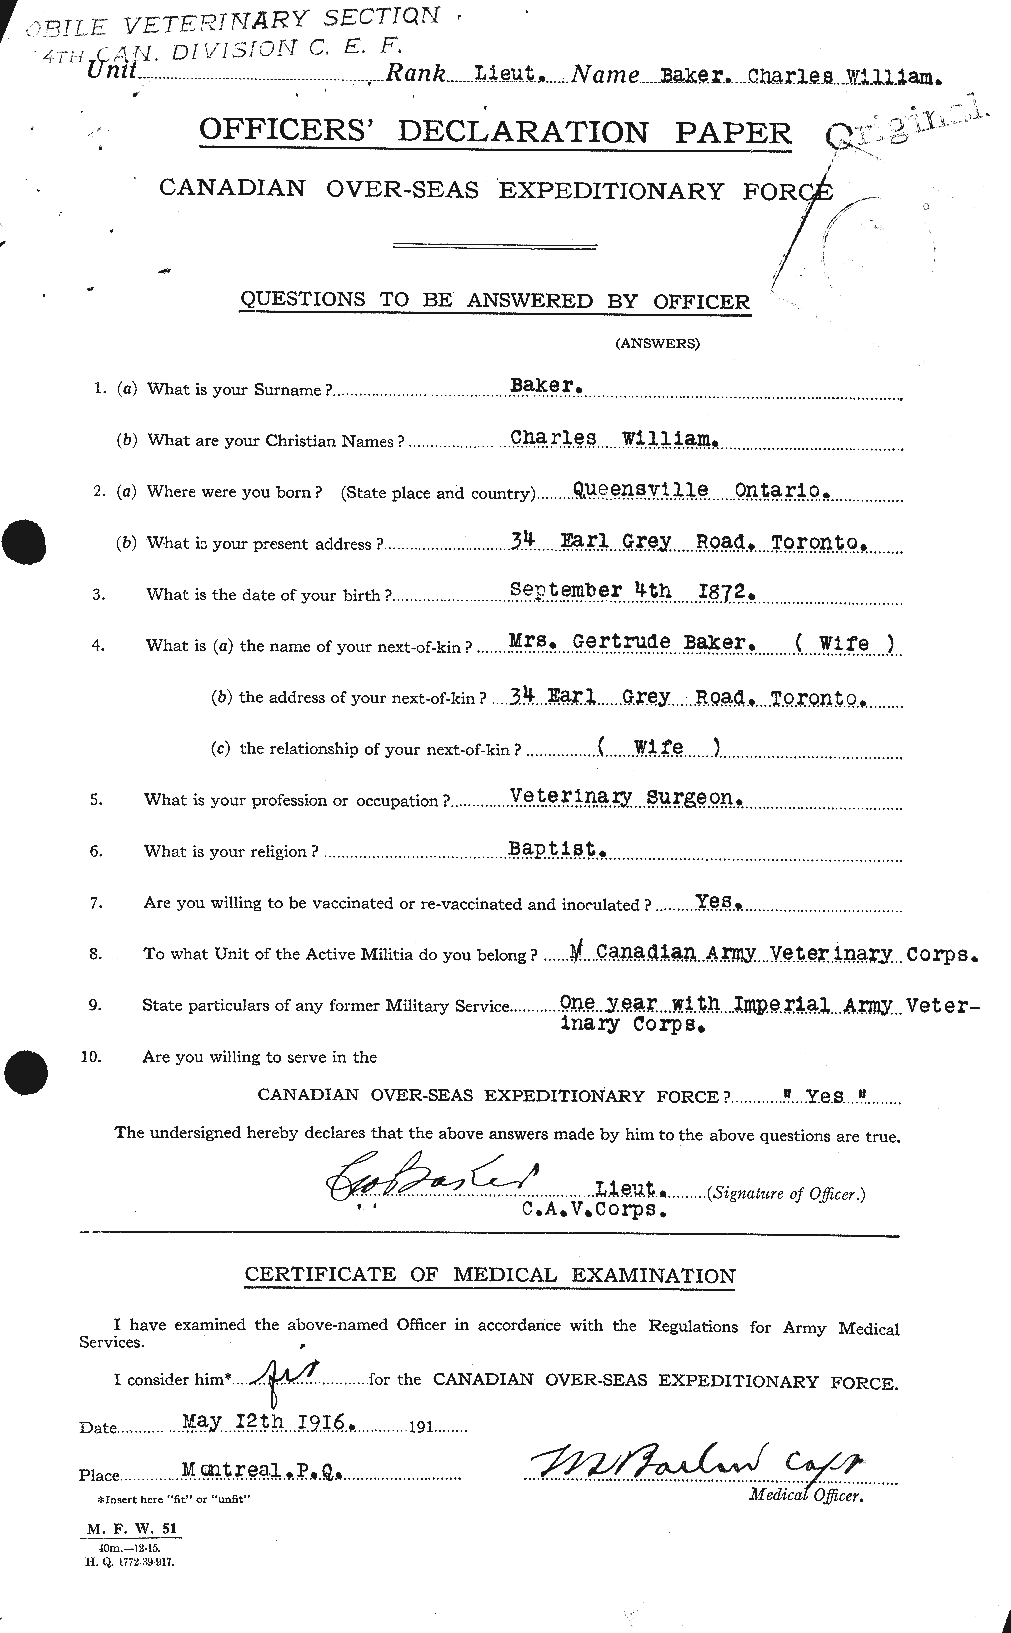 Dossiers du Personnel de la Première Guerre mondiale - CEC 216435a